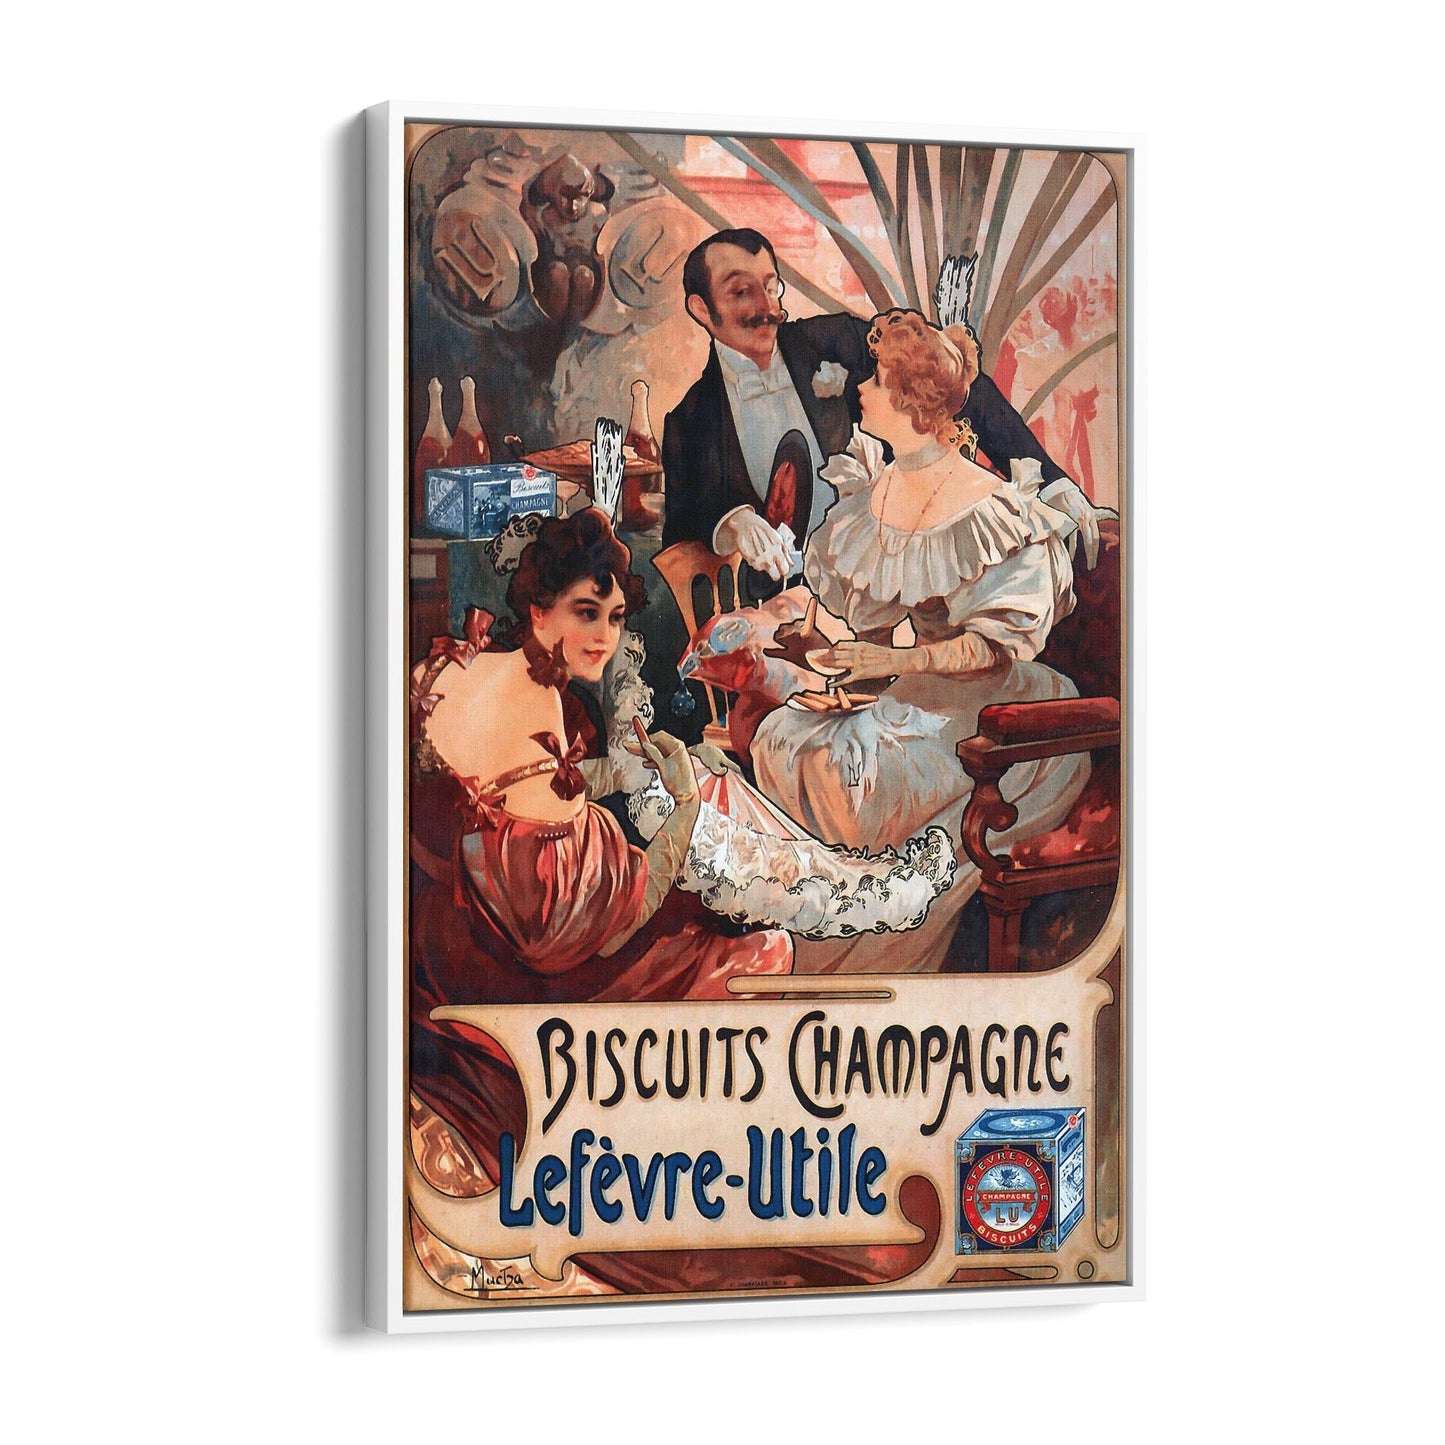 Biscuits Champagne "Lefevre-Utile" French Food | Framed Canvas Vintage Advertisement